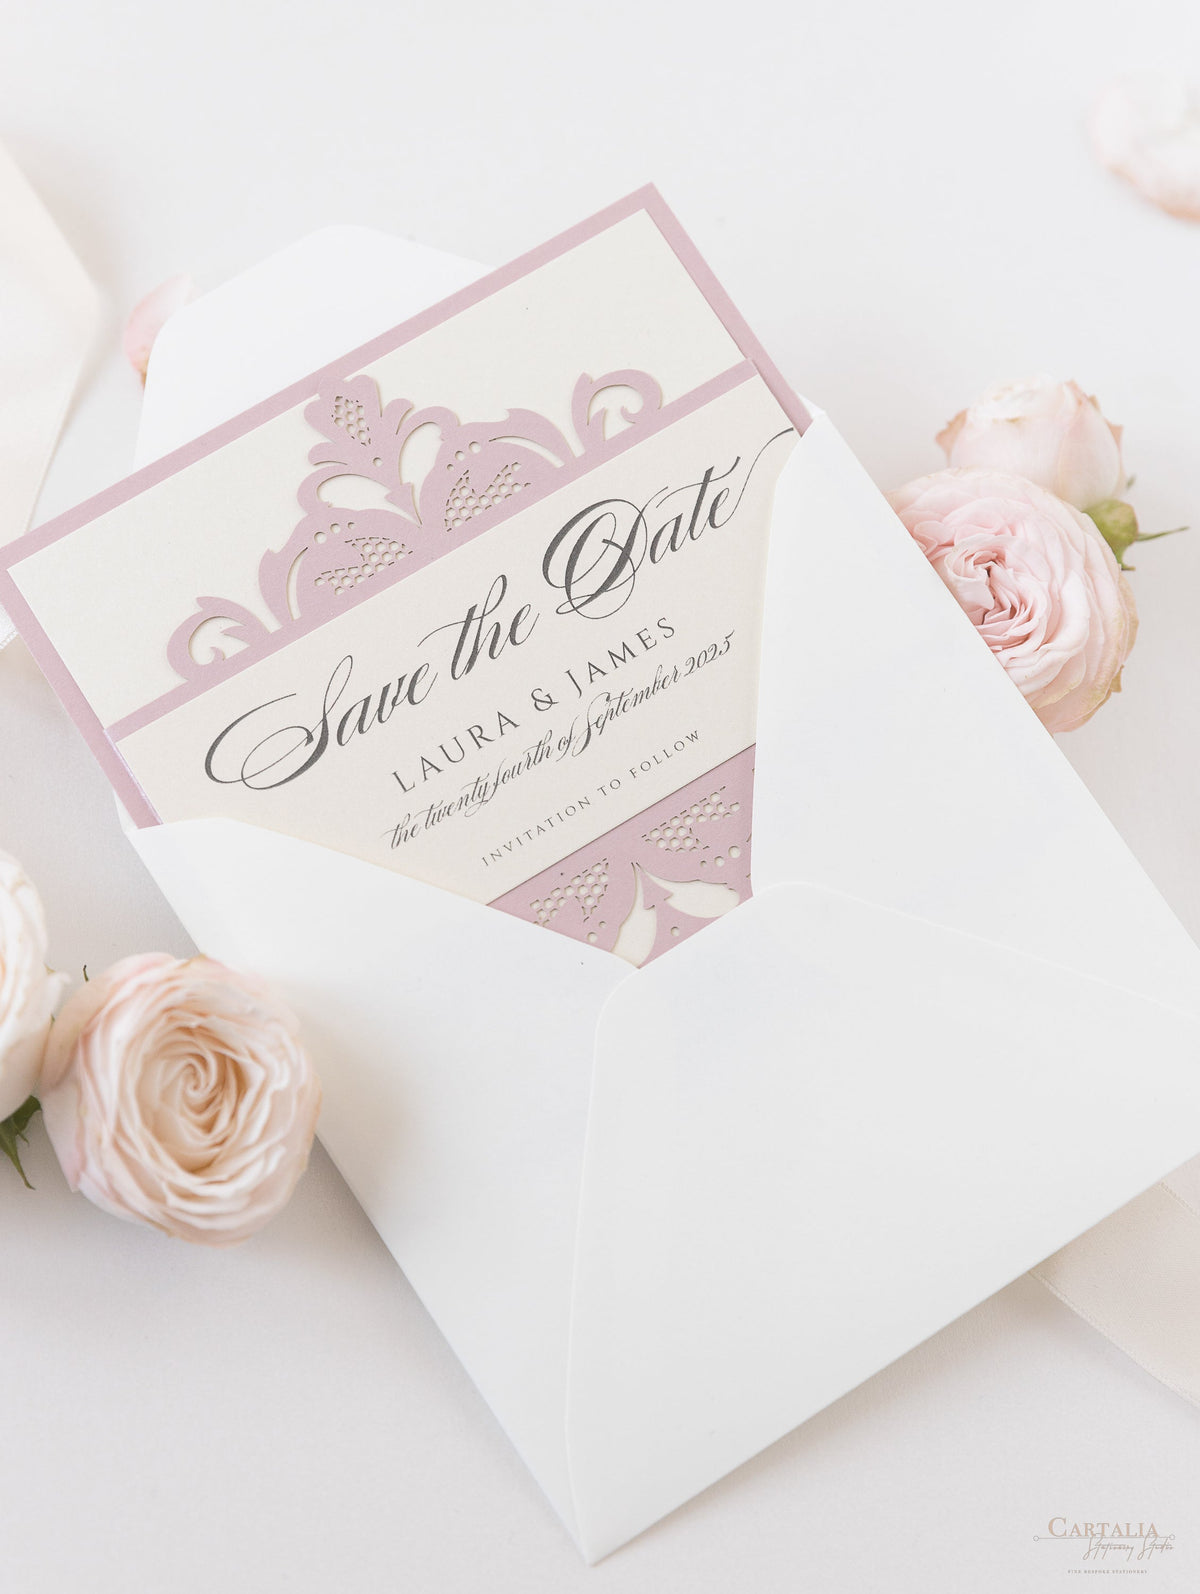 Tarjeta de boda para guardar la fecha cortada con láser de la colección Blush and Cream